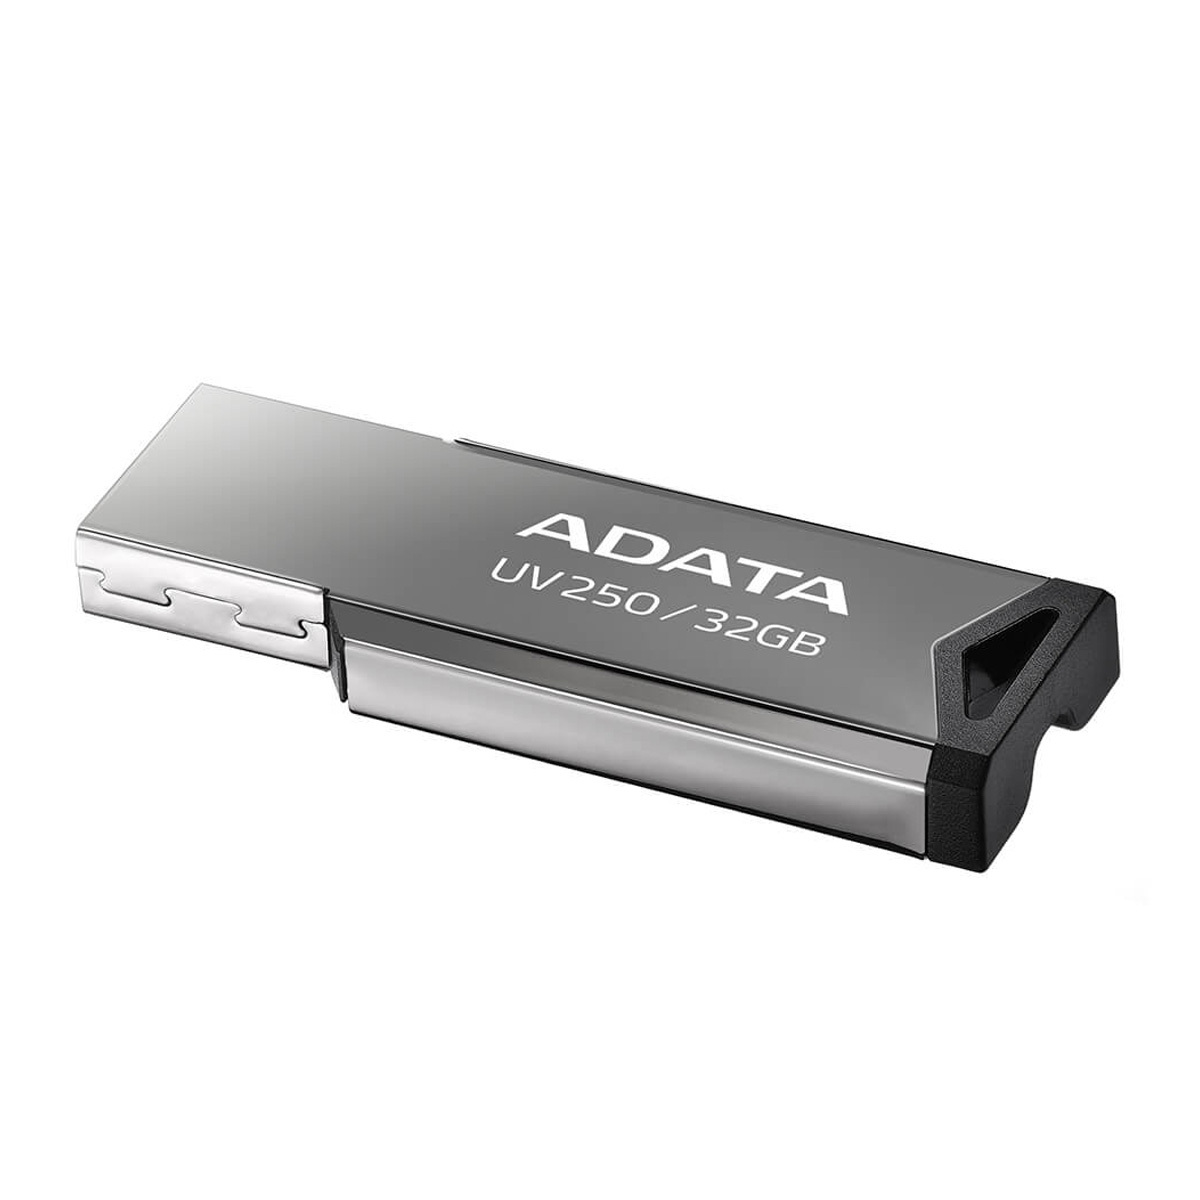 MEMORIA USB 32GB  PLATA ADATA | Office Depot El Salvador